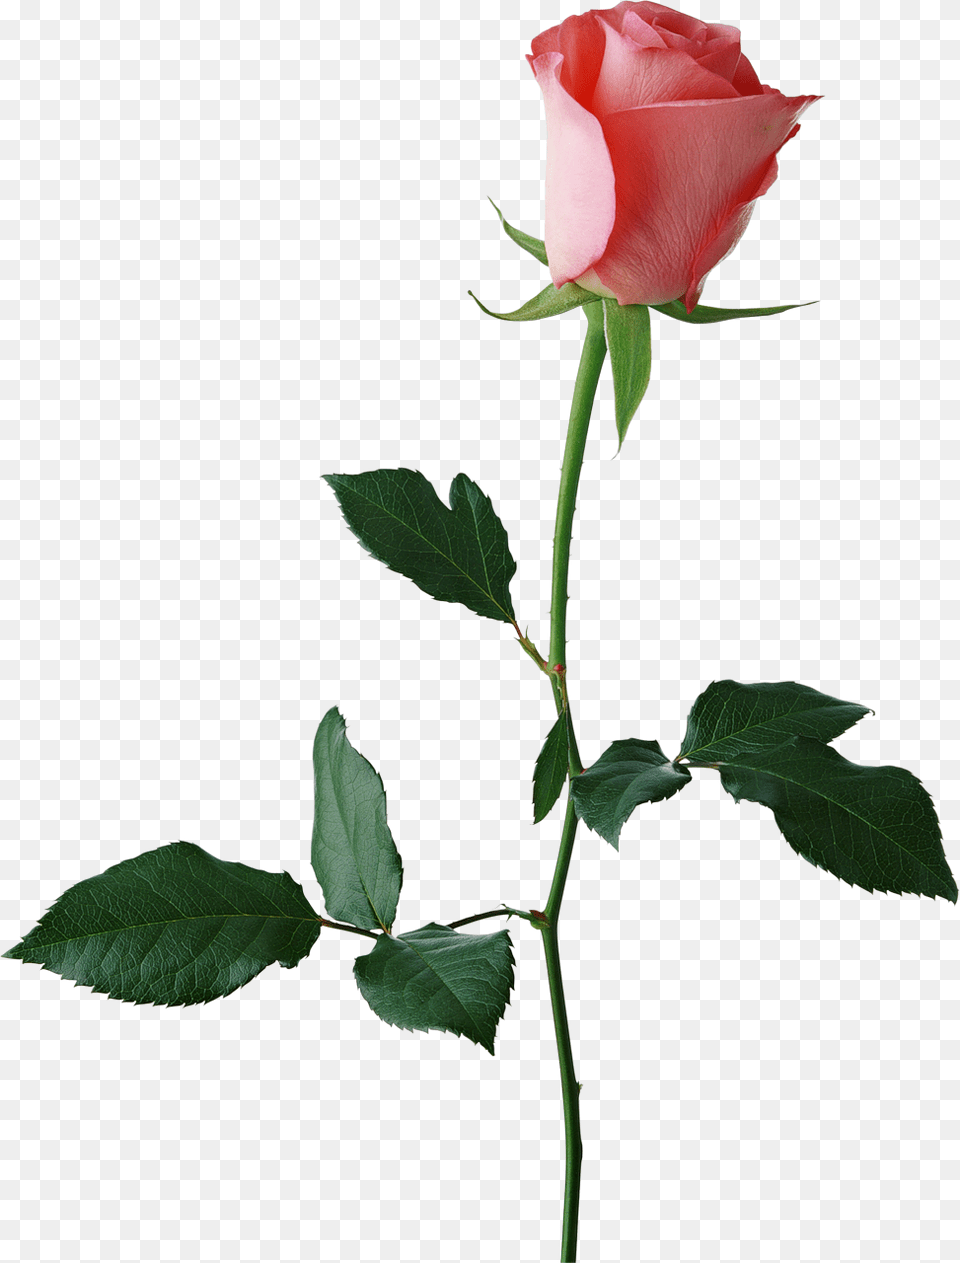 Rose Stem Large Rose Bud Clipart Red Rose Background, Flower, Plant, Leaf Free Transparent Png